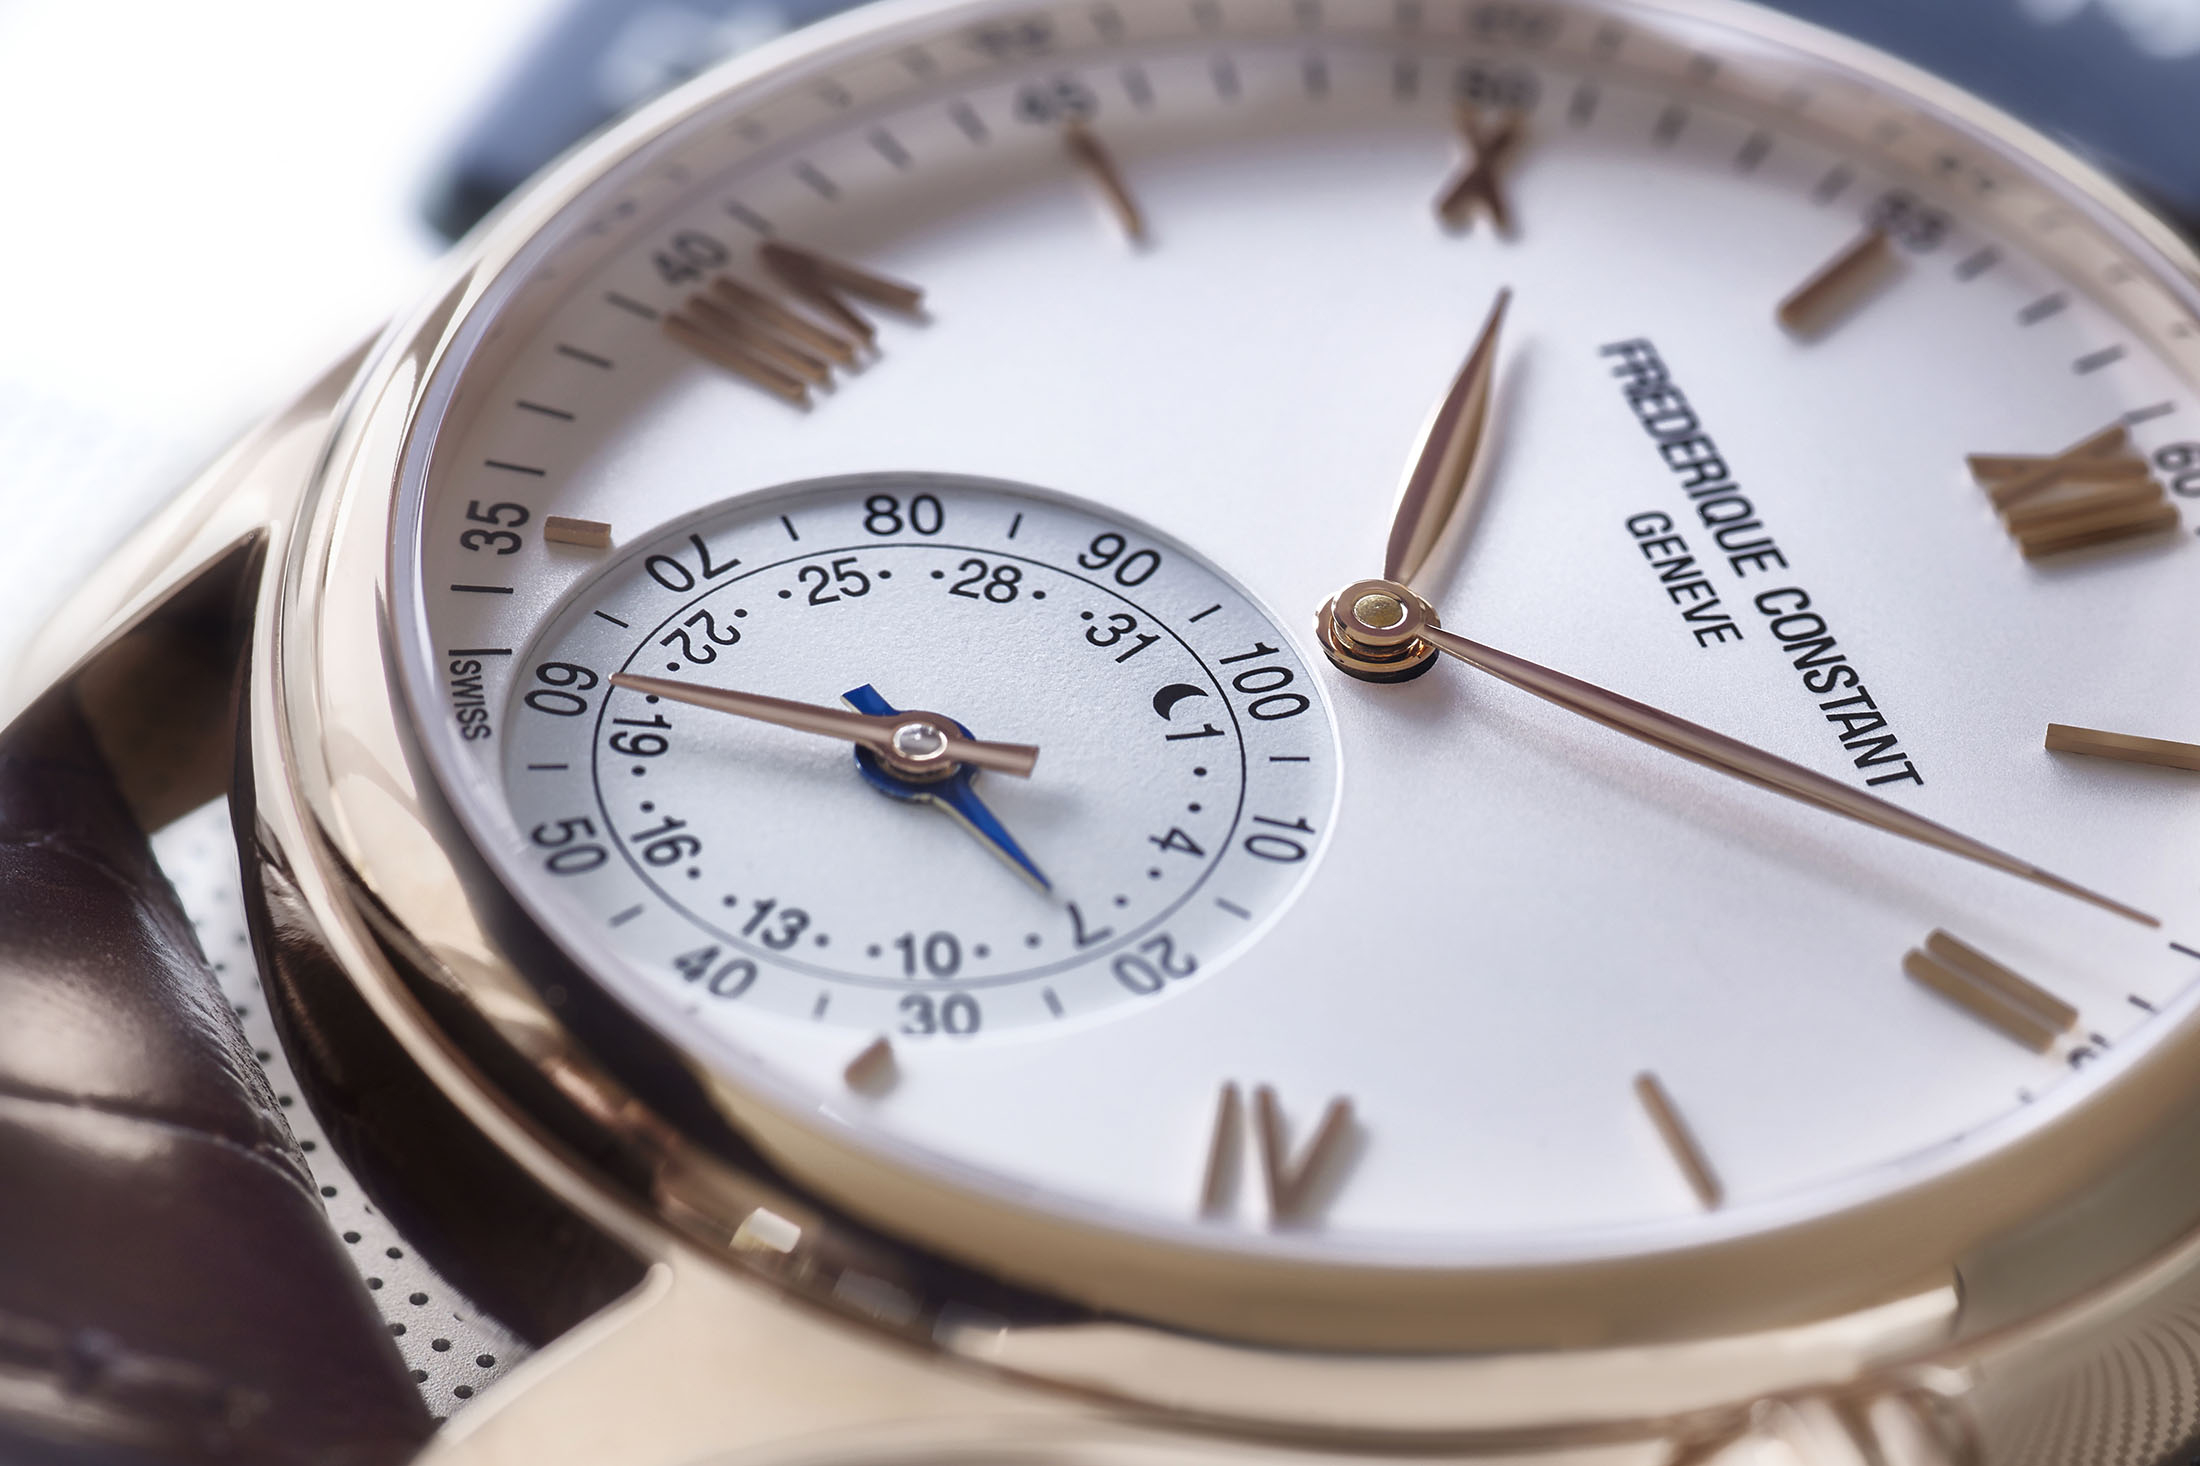 Сайты производителя часов. Frederique constant Horological SMARTWATCH. Часовые фирмы Швейцарии. Швейцарский Часовщик. Производство часов.